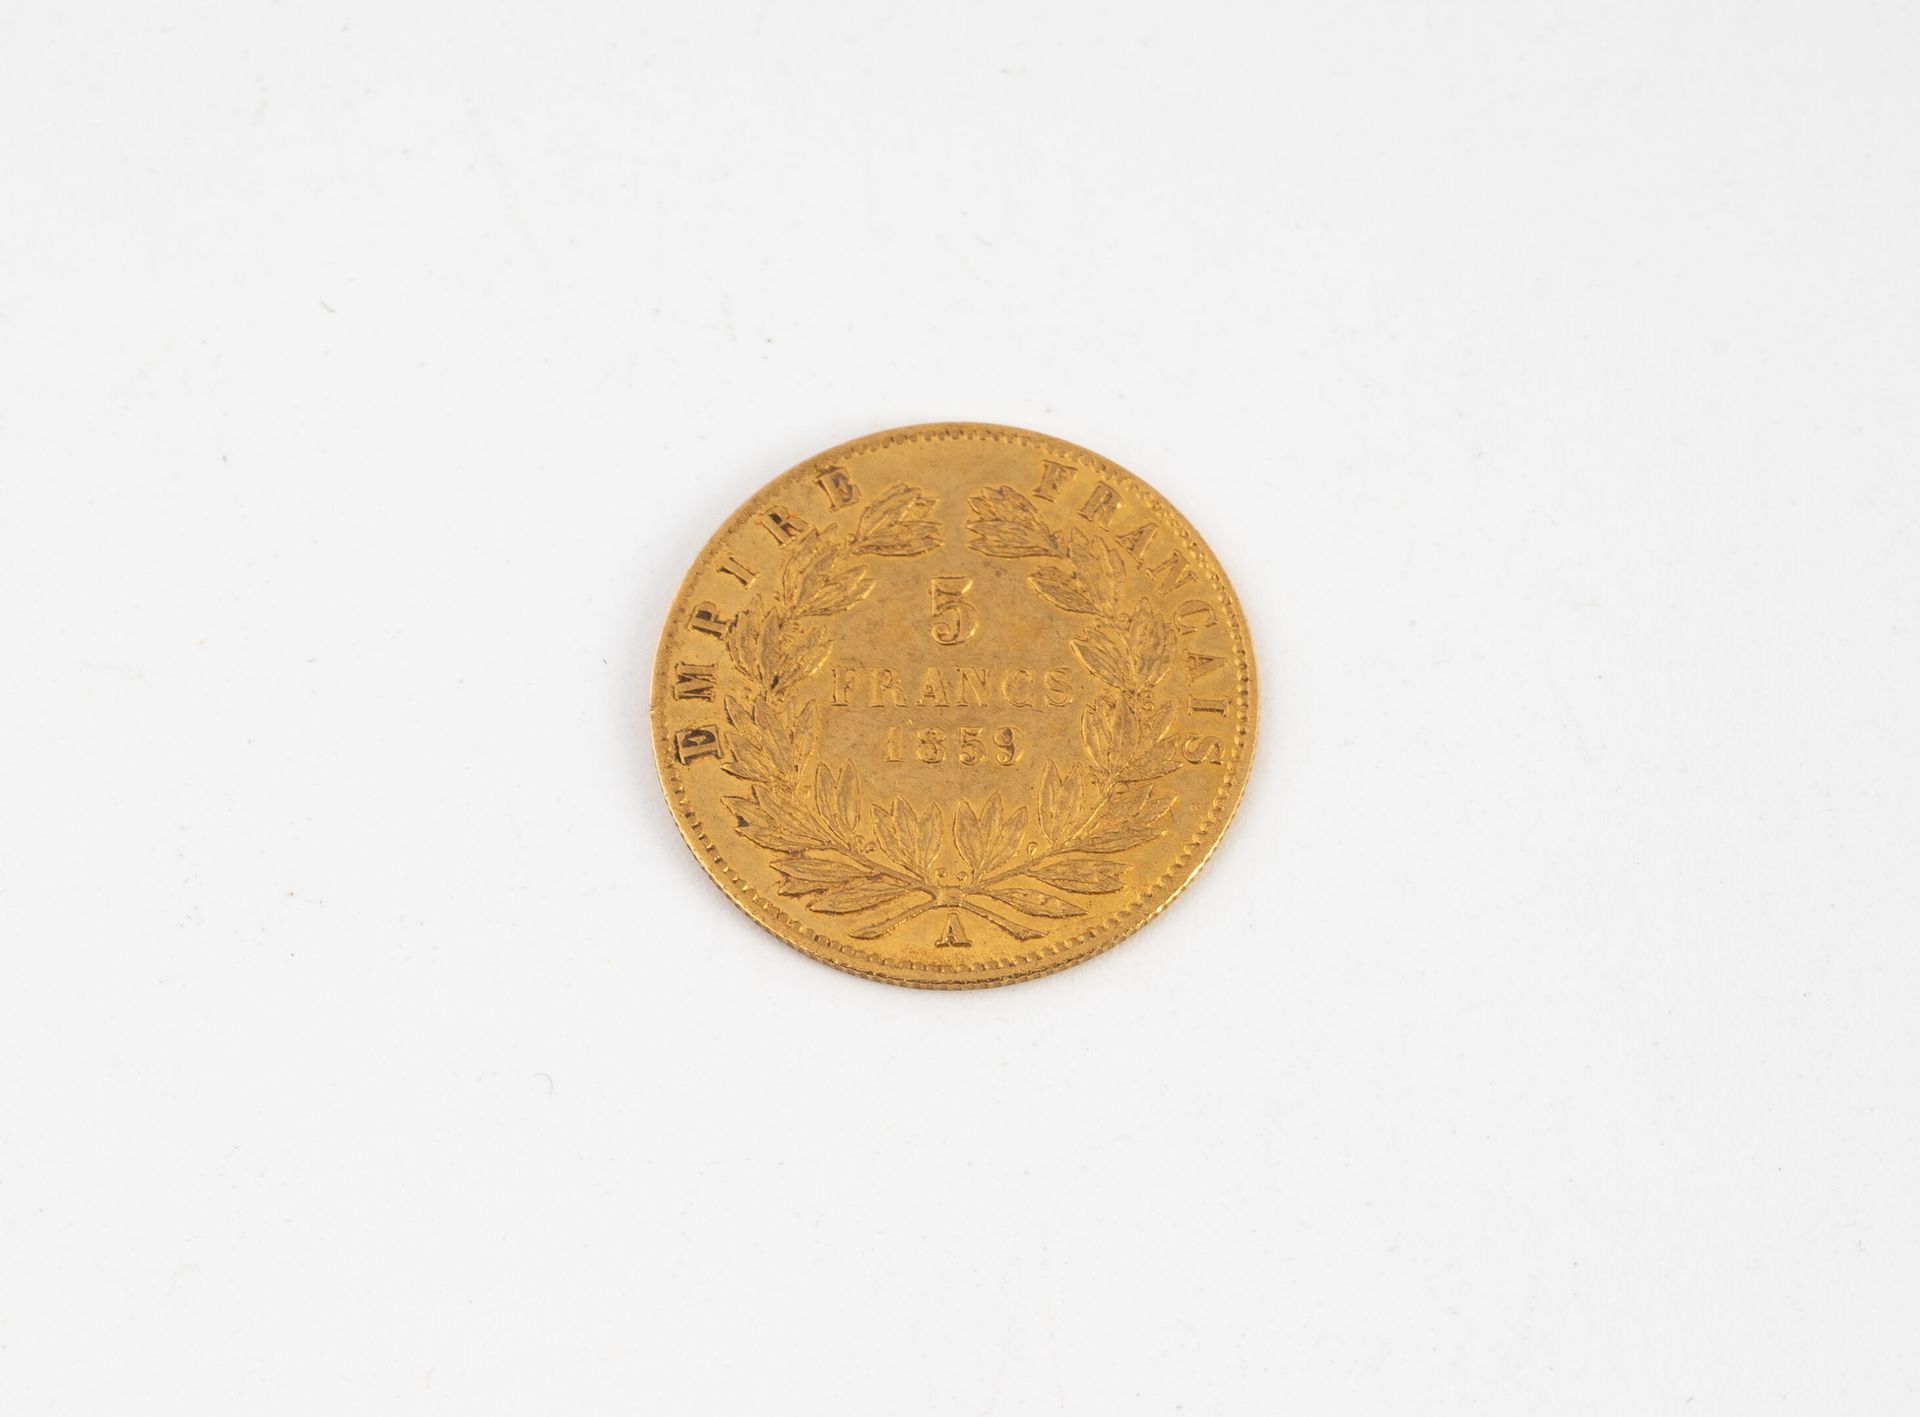 FRANCE Moneda de oro de 5 francos Napoleón III 1859.
Peso : 1,59 g.
Arañazos y d&hellip;